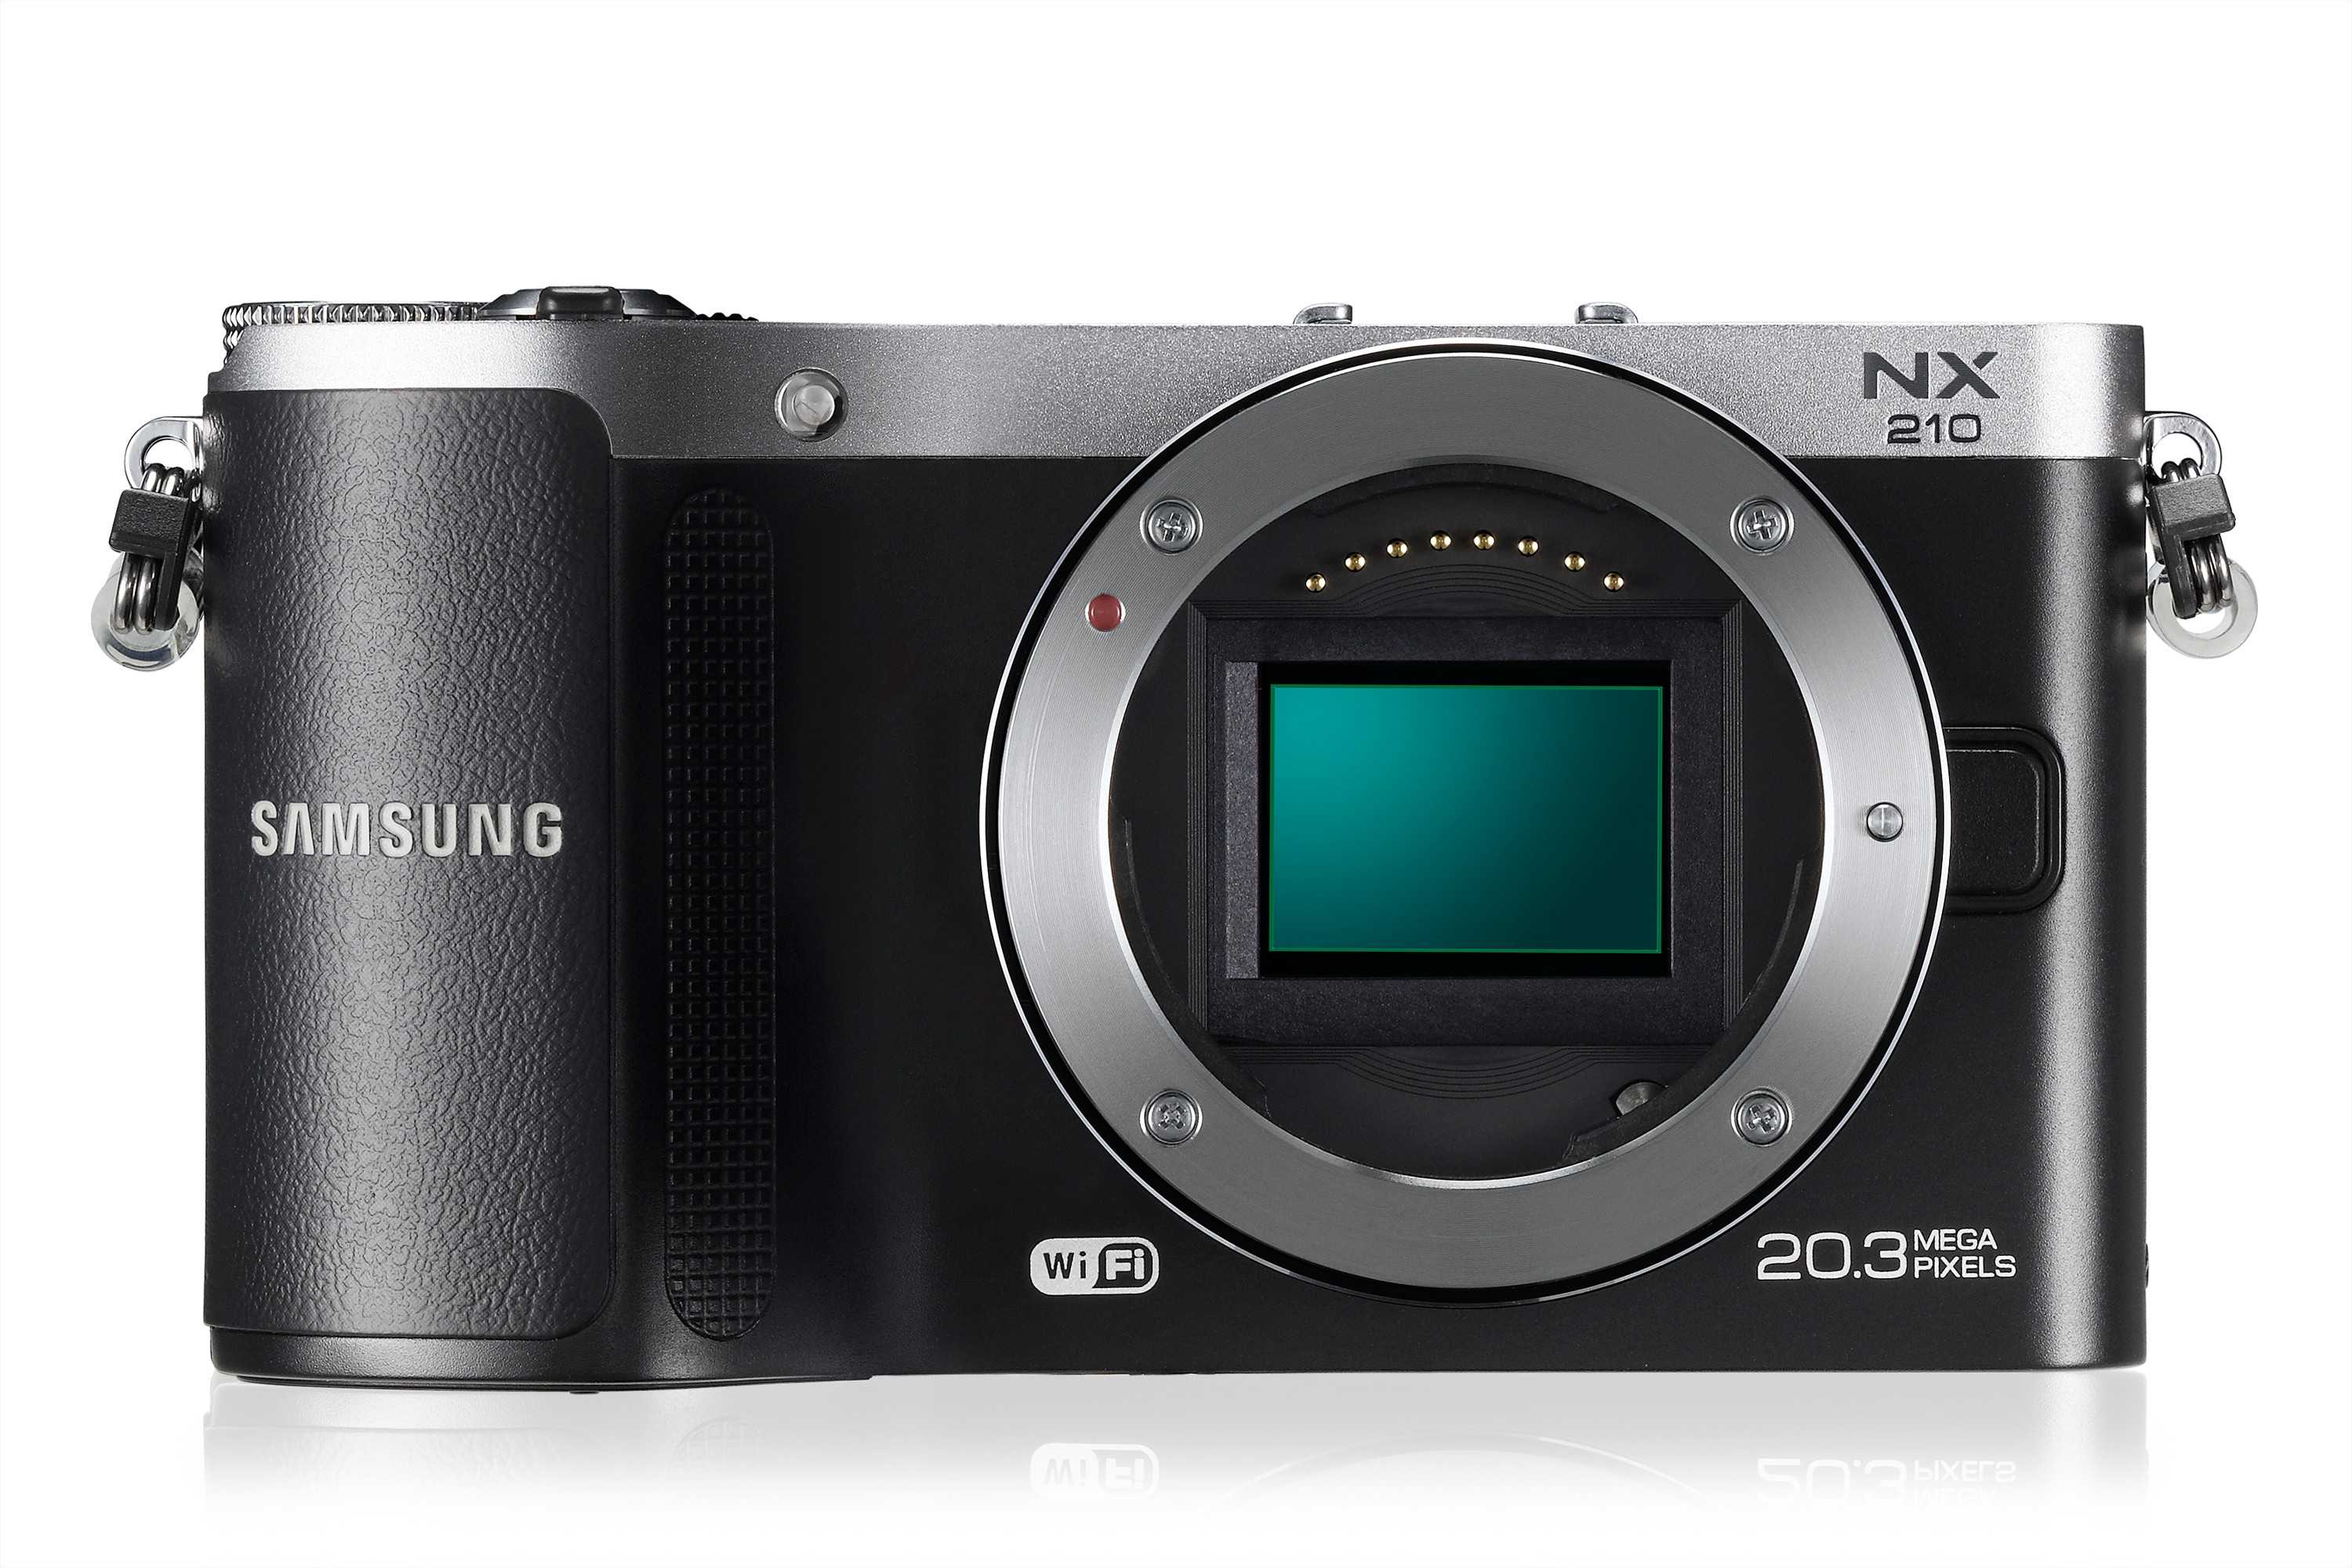 Samsung nx210 kit - купить , скидки, цена, отзывы, обзор, характеристики - фотоаппараты цифровые